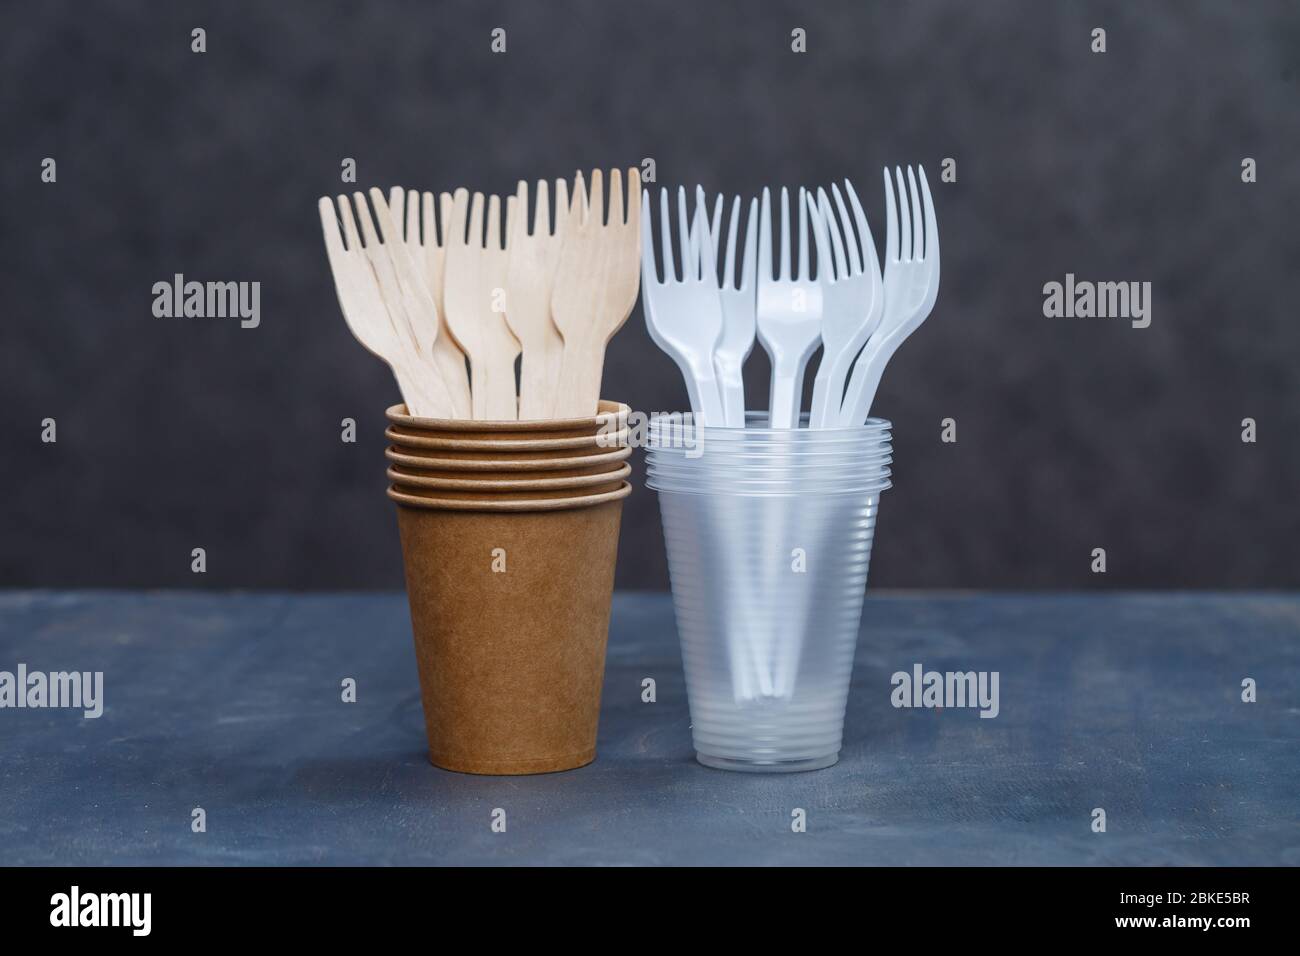 Vaisselle écologique jetable en bois de bambou et papier sur fond gris.  Vaisselle et couverts en plastique. Respect de l'environnement. Recyclage  Photo Stock - Alamy